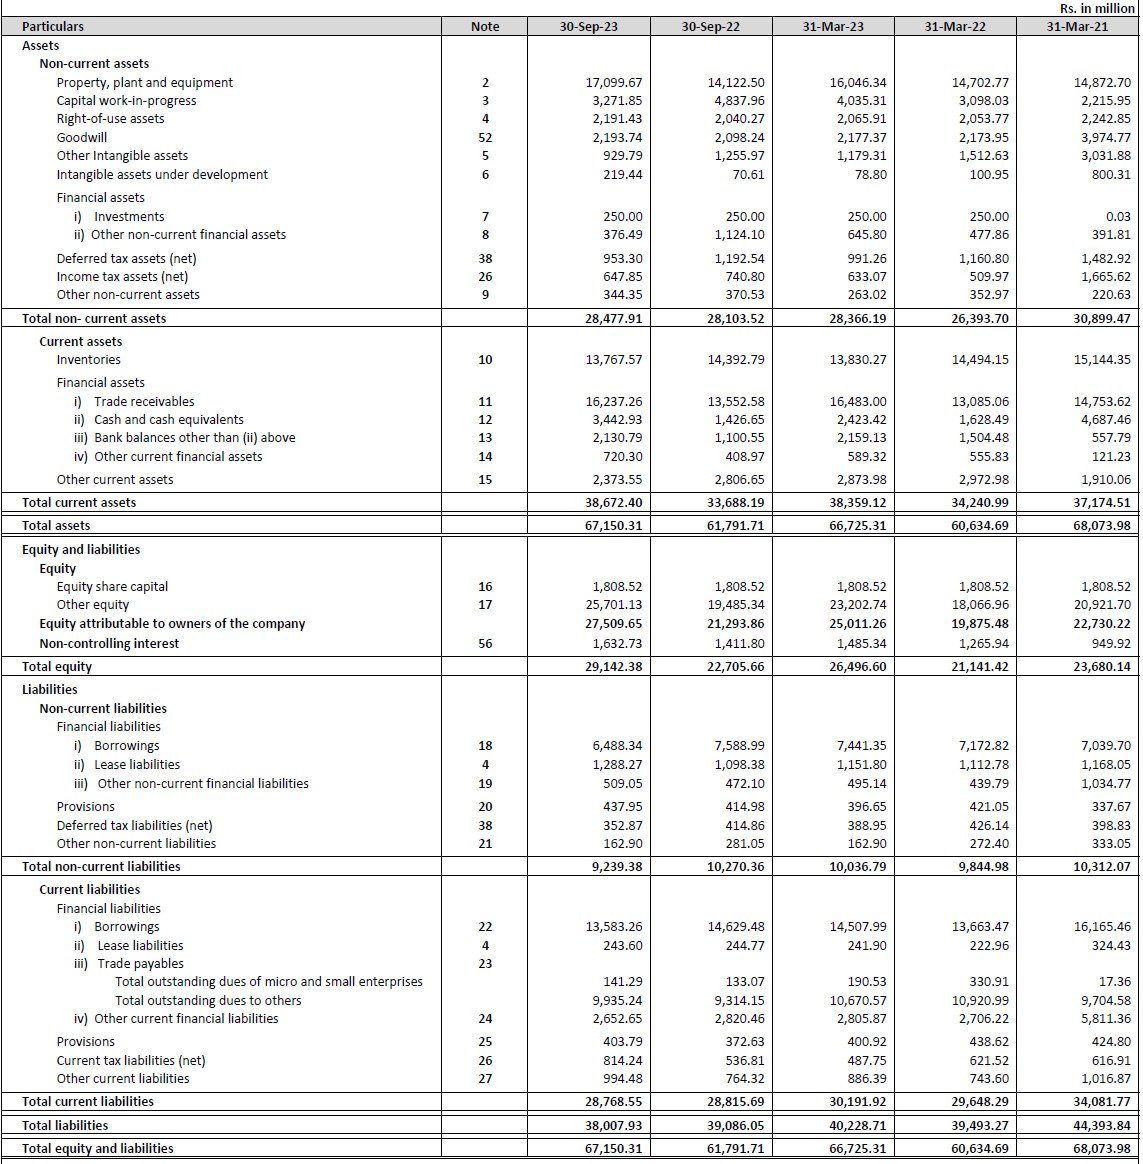 Balance Sheet of Emcure pharma IPO